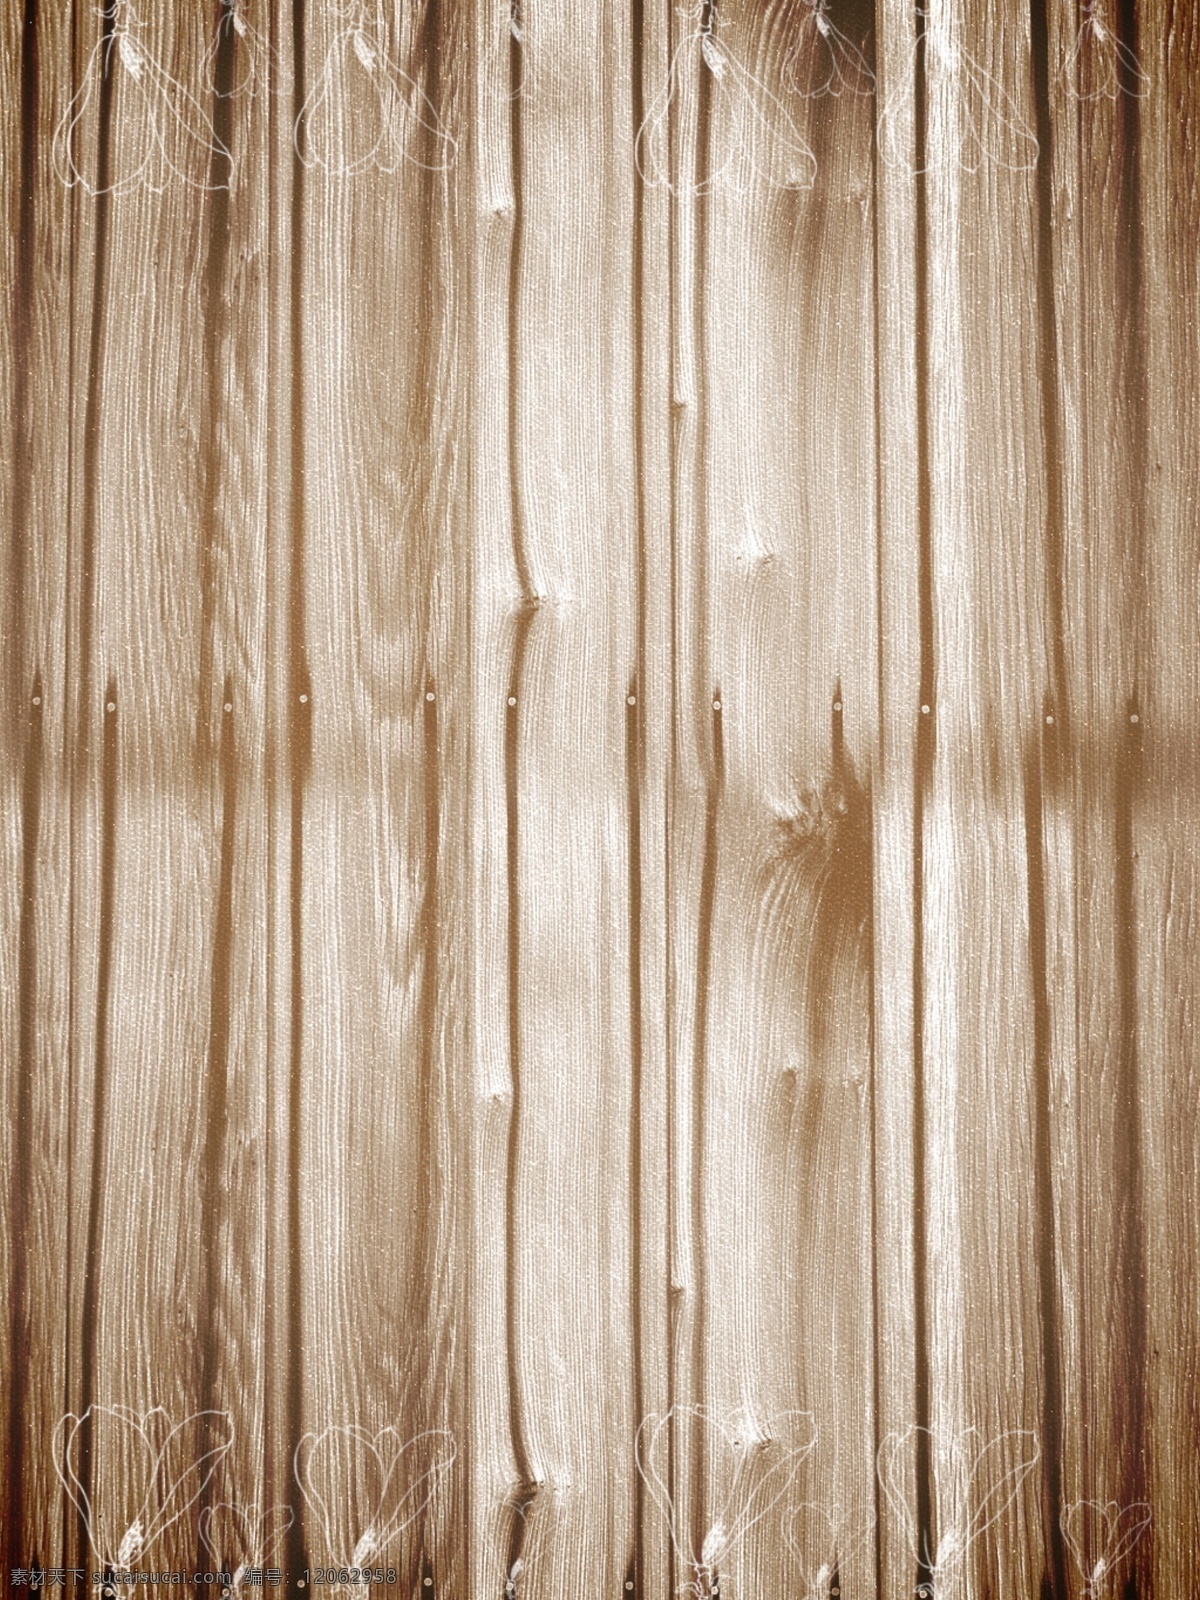 木纹 木板纹理 木板纹 木纹图片 实木纹路 木材纹理 木纹纹理 木纹背景 木纹素材 分层